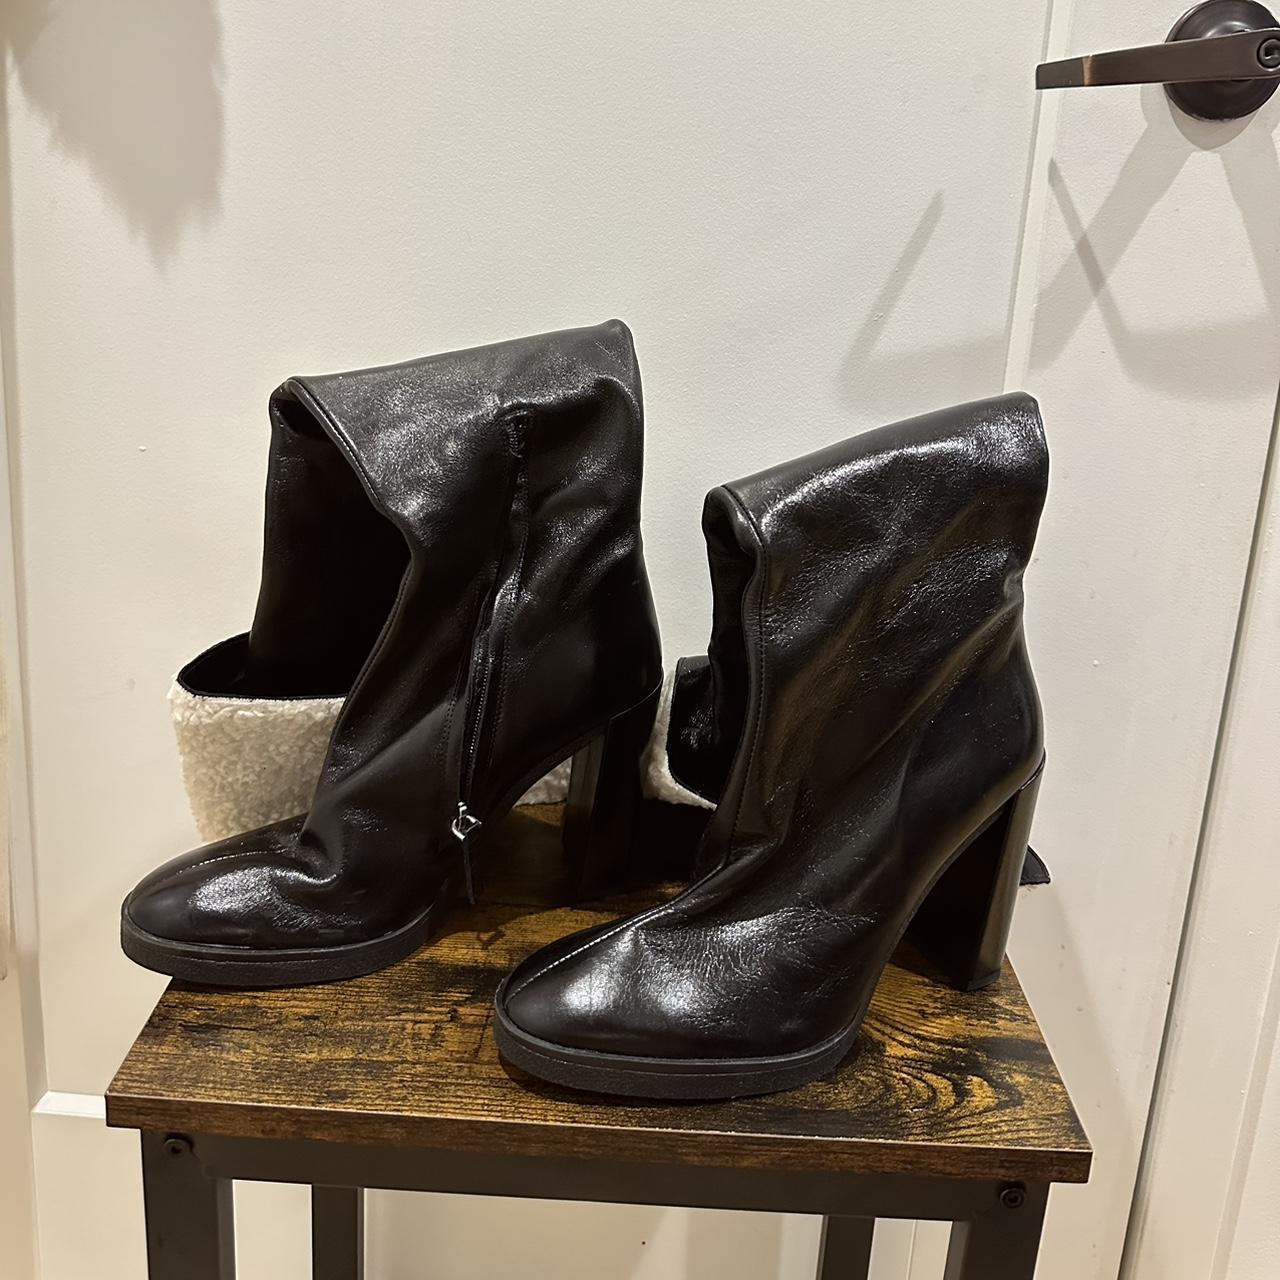 Zara boots. Never worn! Size: 40/9 - Depop